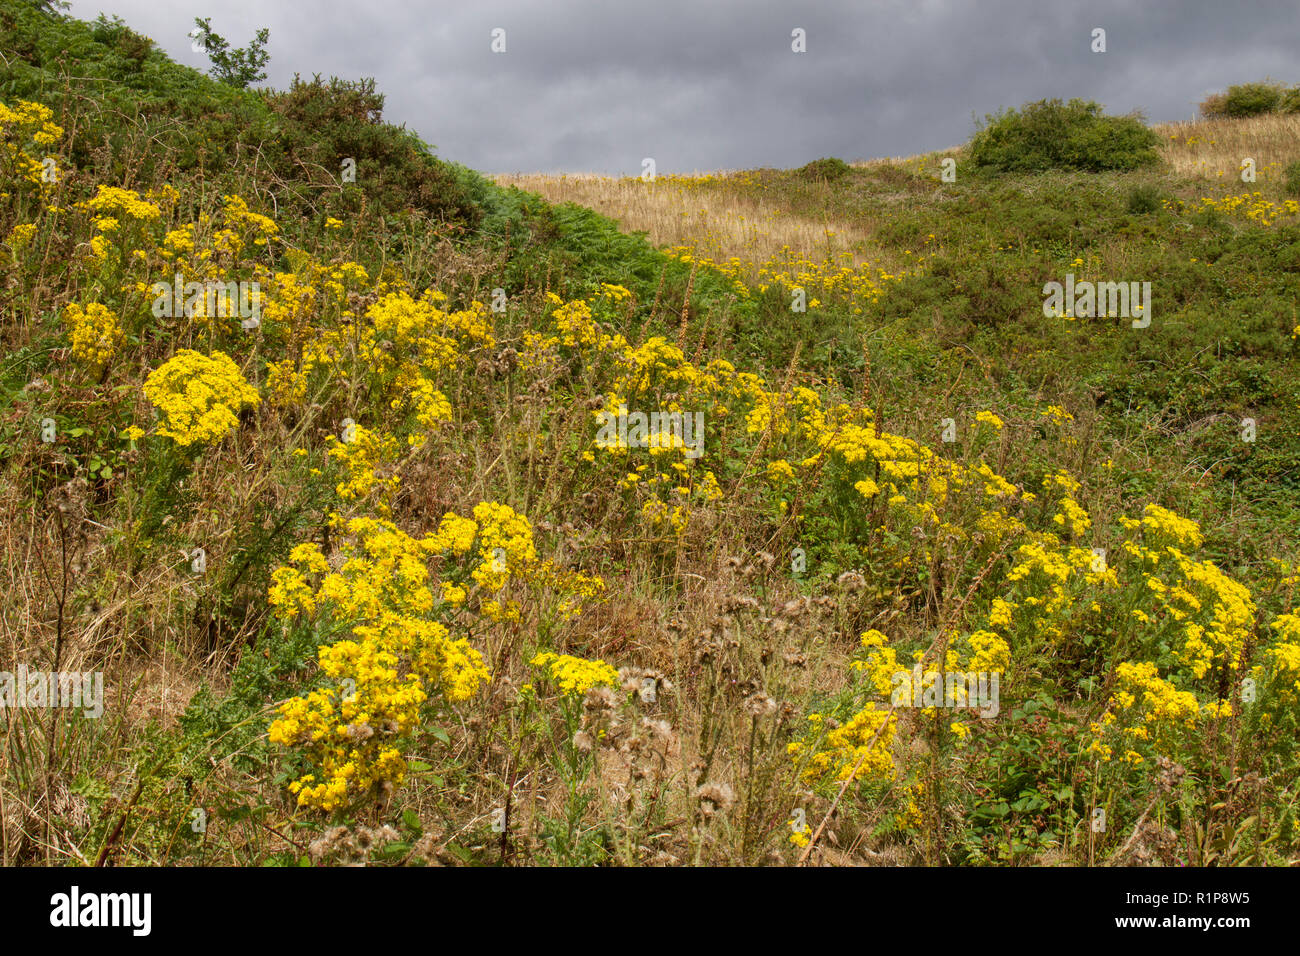 Séneçon commun (jacobaea vulgaris) floraison sur une colline. Powys, Pays de Galles. Juillet. Banque D'Images